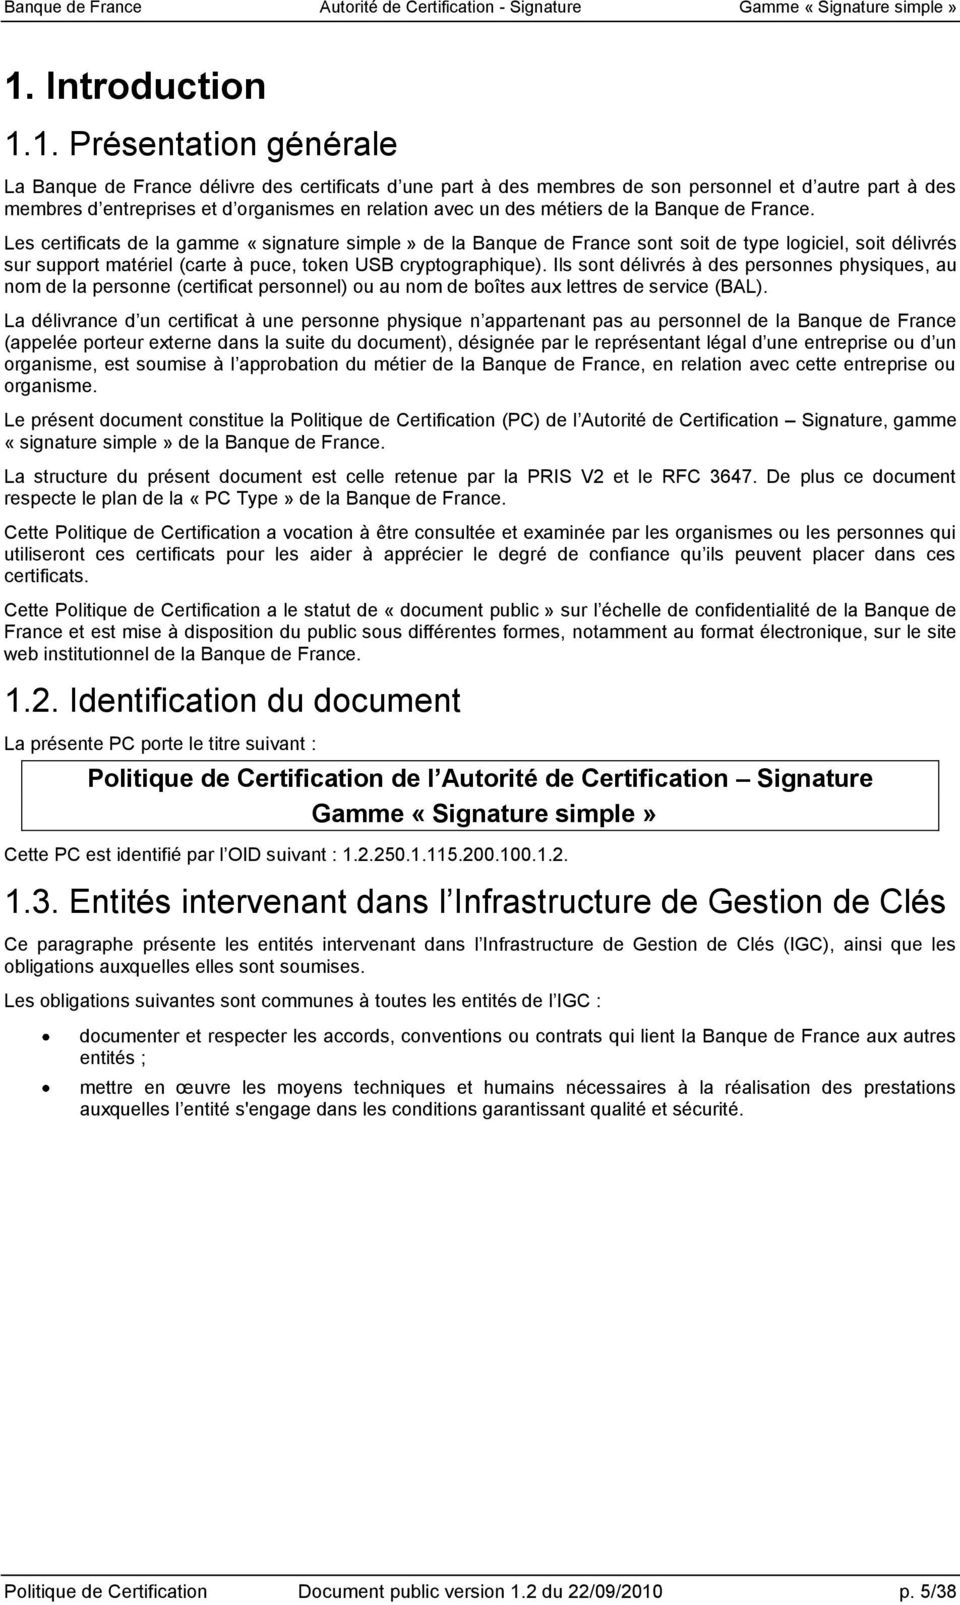 Les certificats de la gamme «signature simple» de la Banque de France sont soit de type logiciel, soit délivrés sur support matériel (carte à puce, token USB cryptographique).